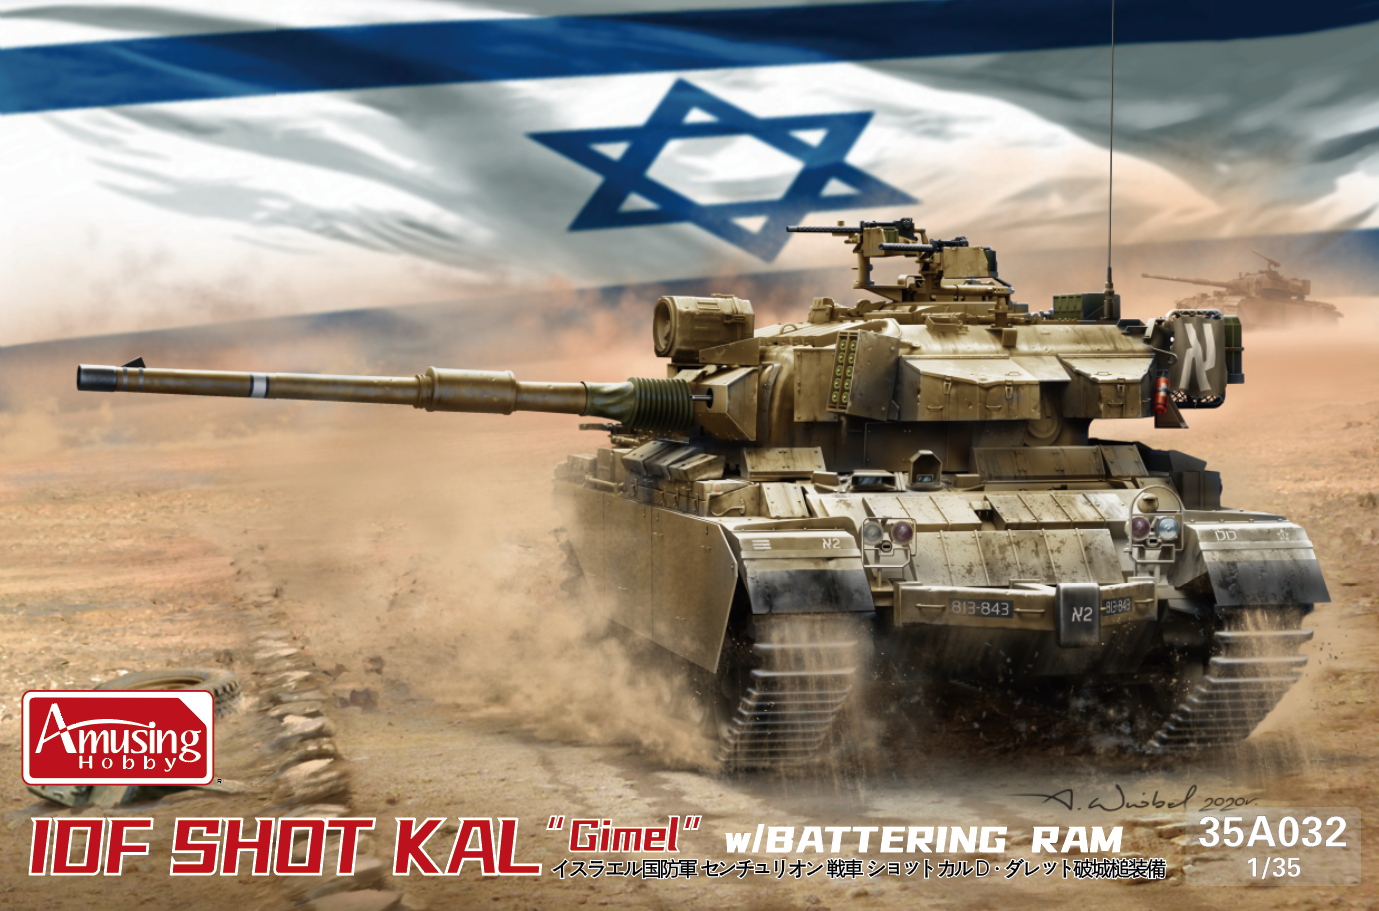 IDF Shot Kal Gimel w/Battering Ram